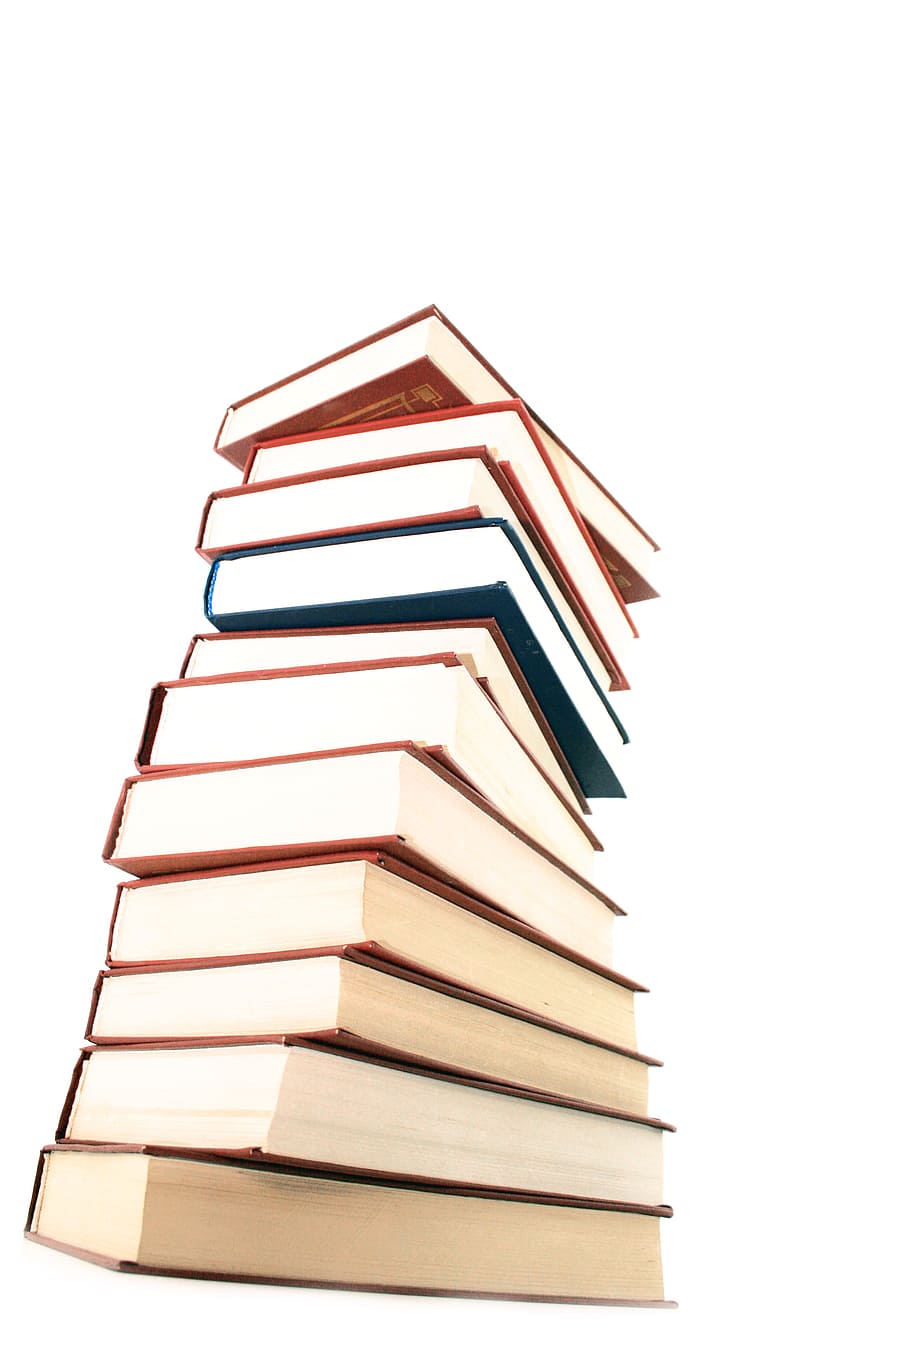 livro, livros, educação, enciclopédia, pilha, informação, isolado, conhecimento, literatura, fundo branco